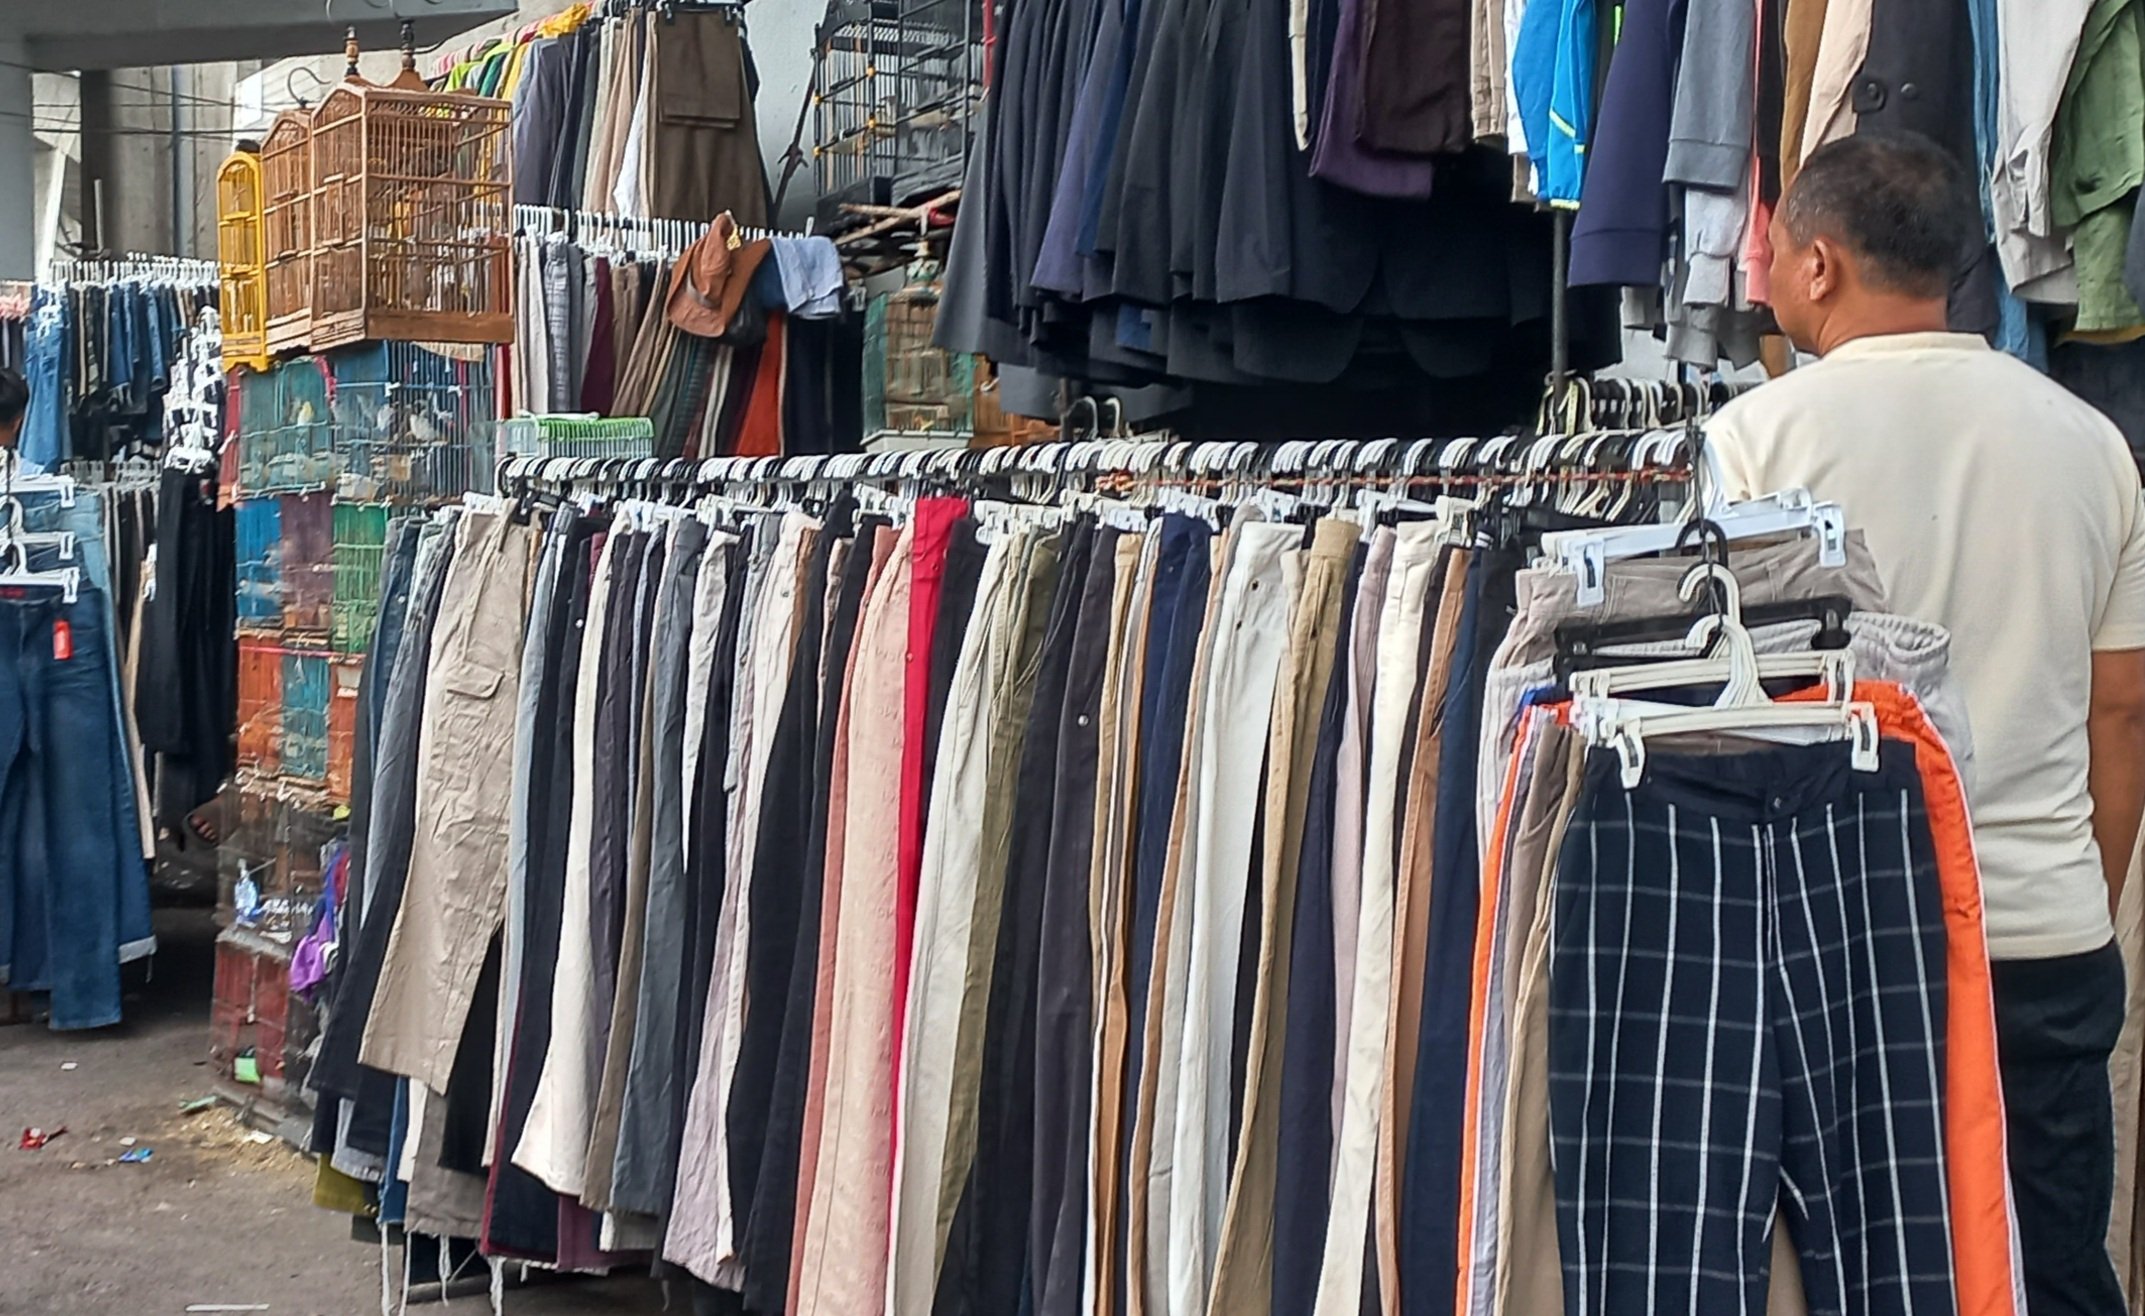 Foto: pedagang pakaian bekas impor /sinpo